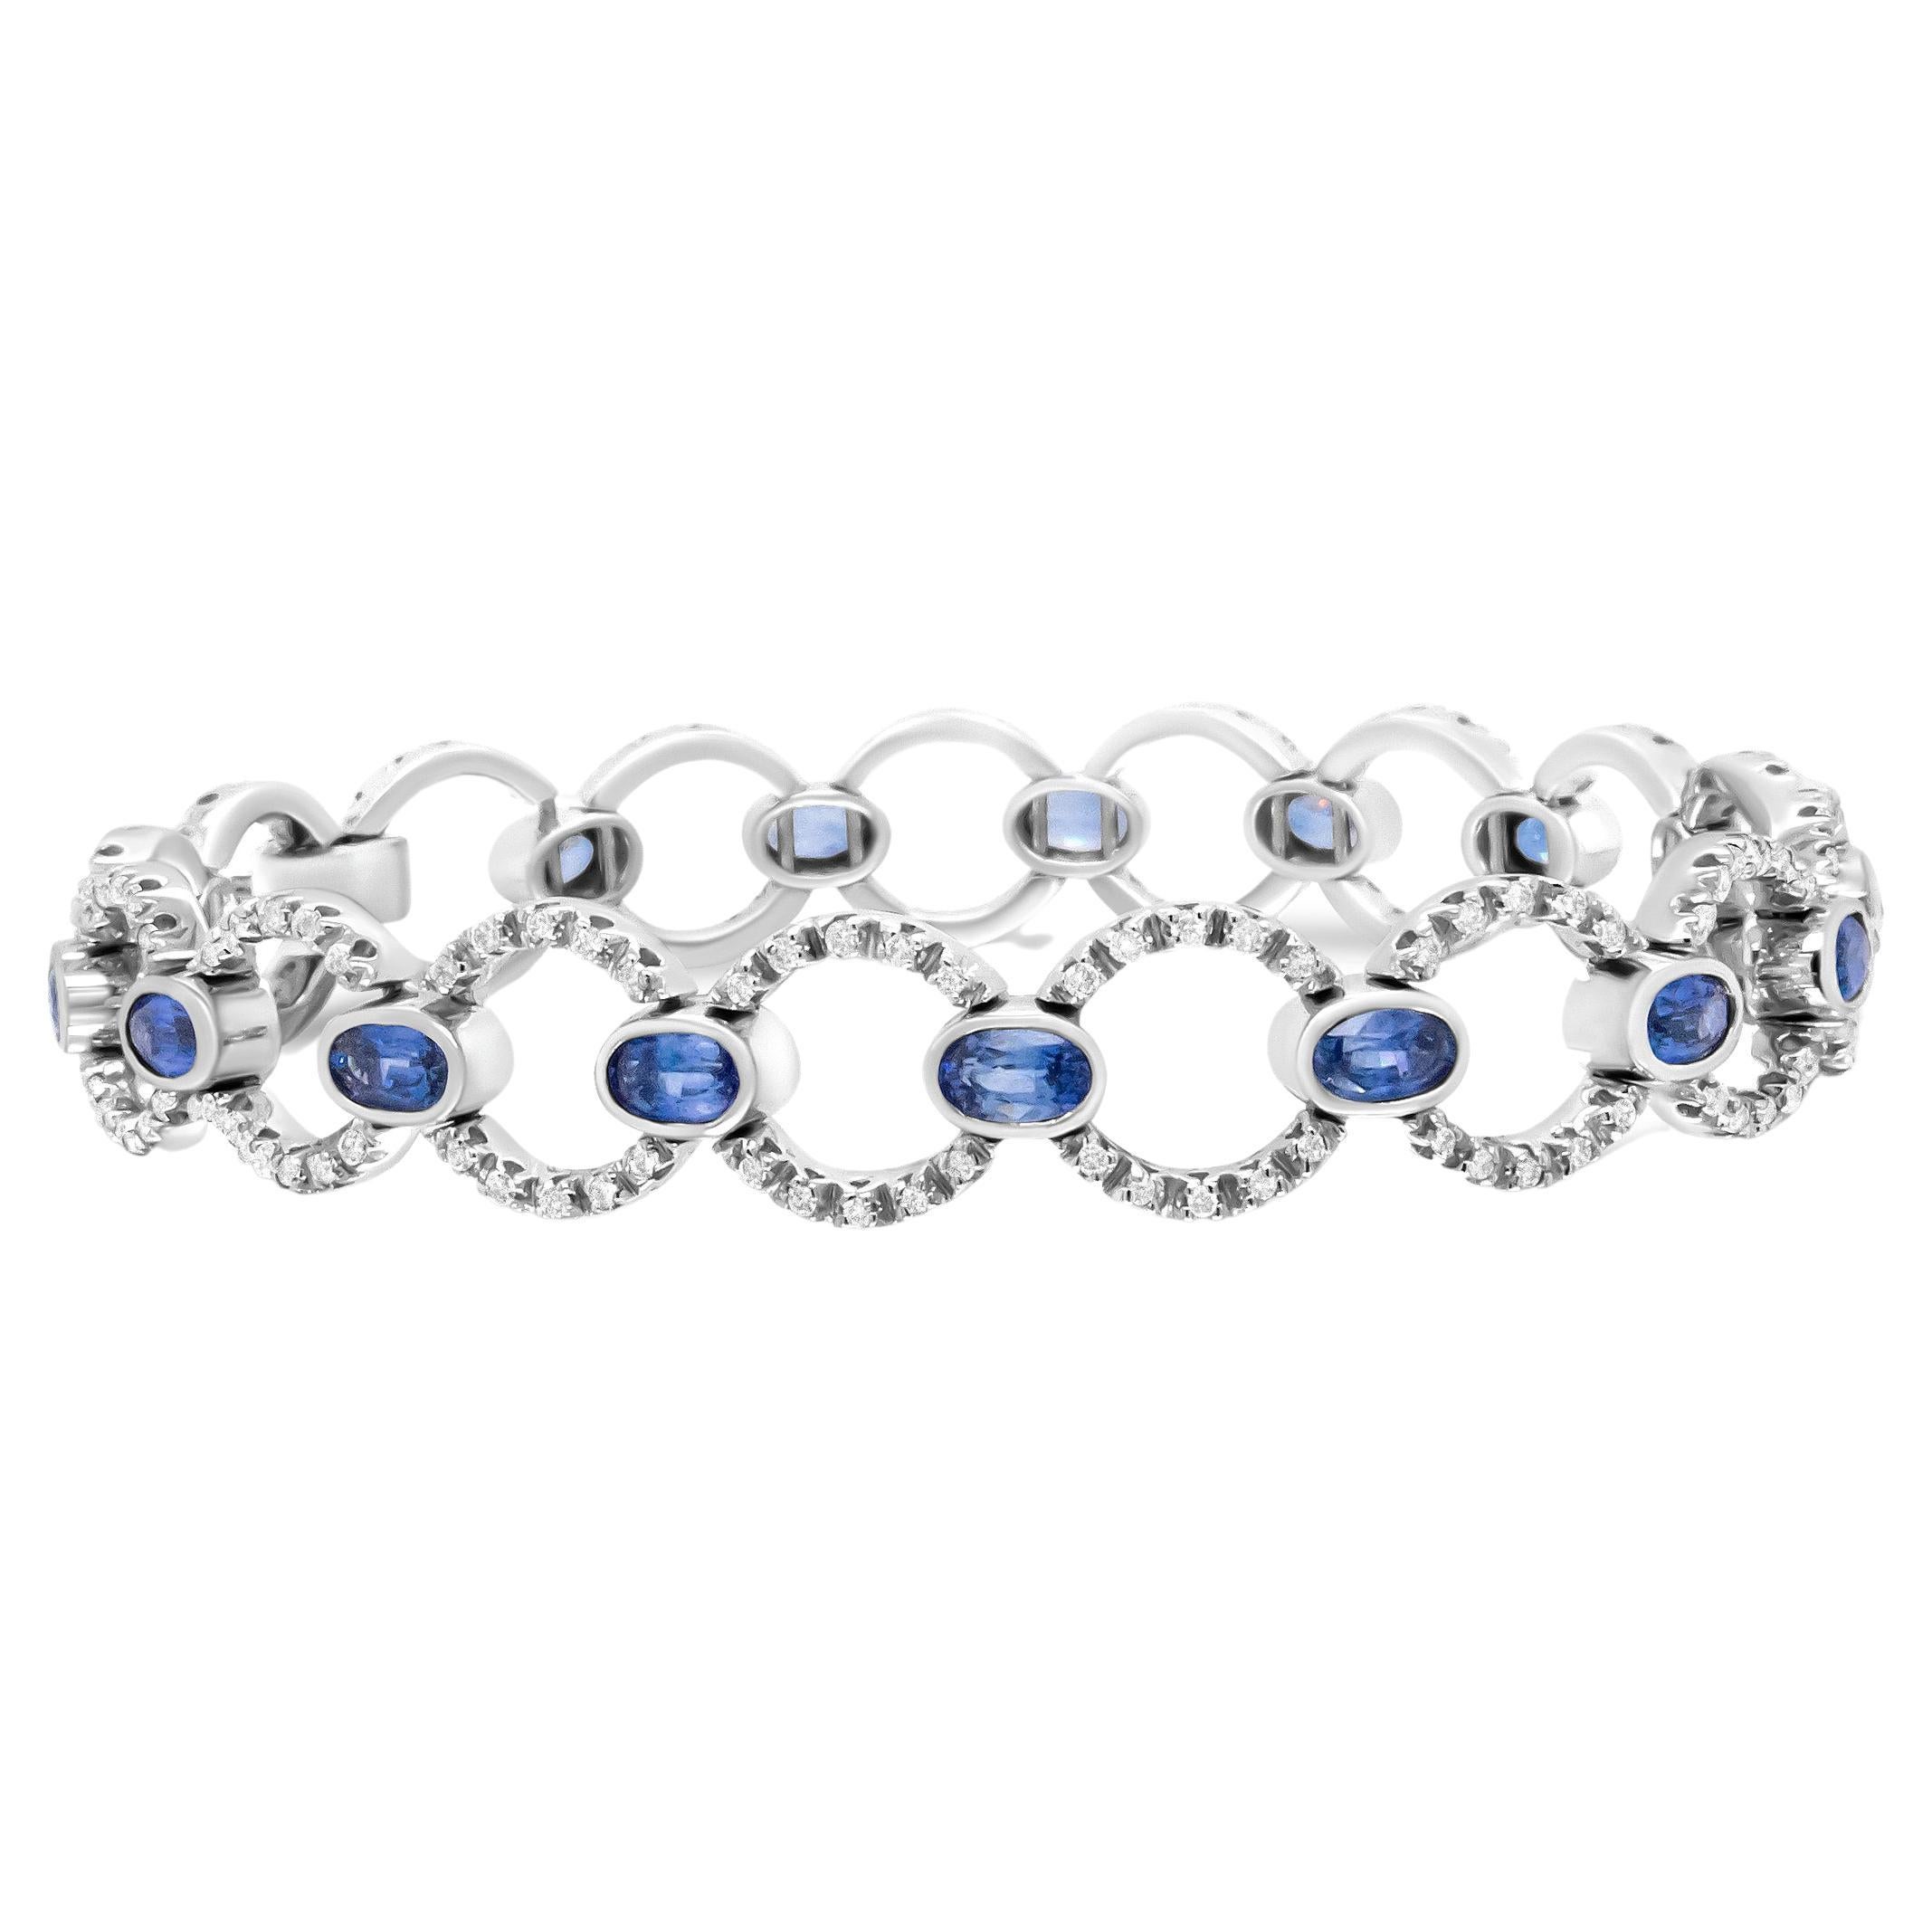 durchbrochenes Kreis-Gliederarmband aus 18 Karat Weigold mit 6 Karat Diamanten und ovalem blauem Saphir